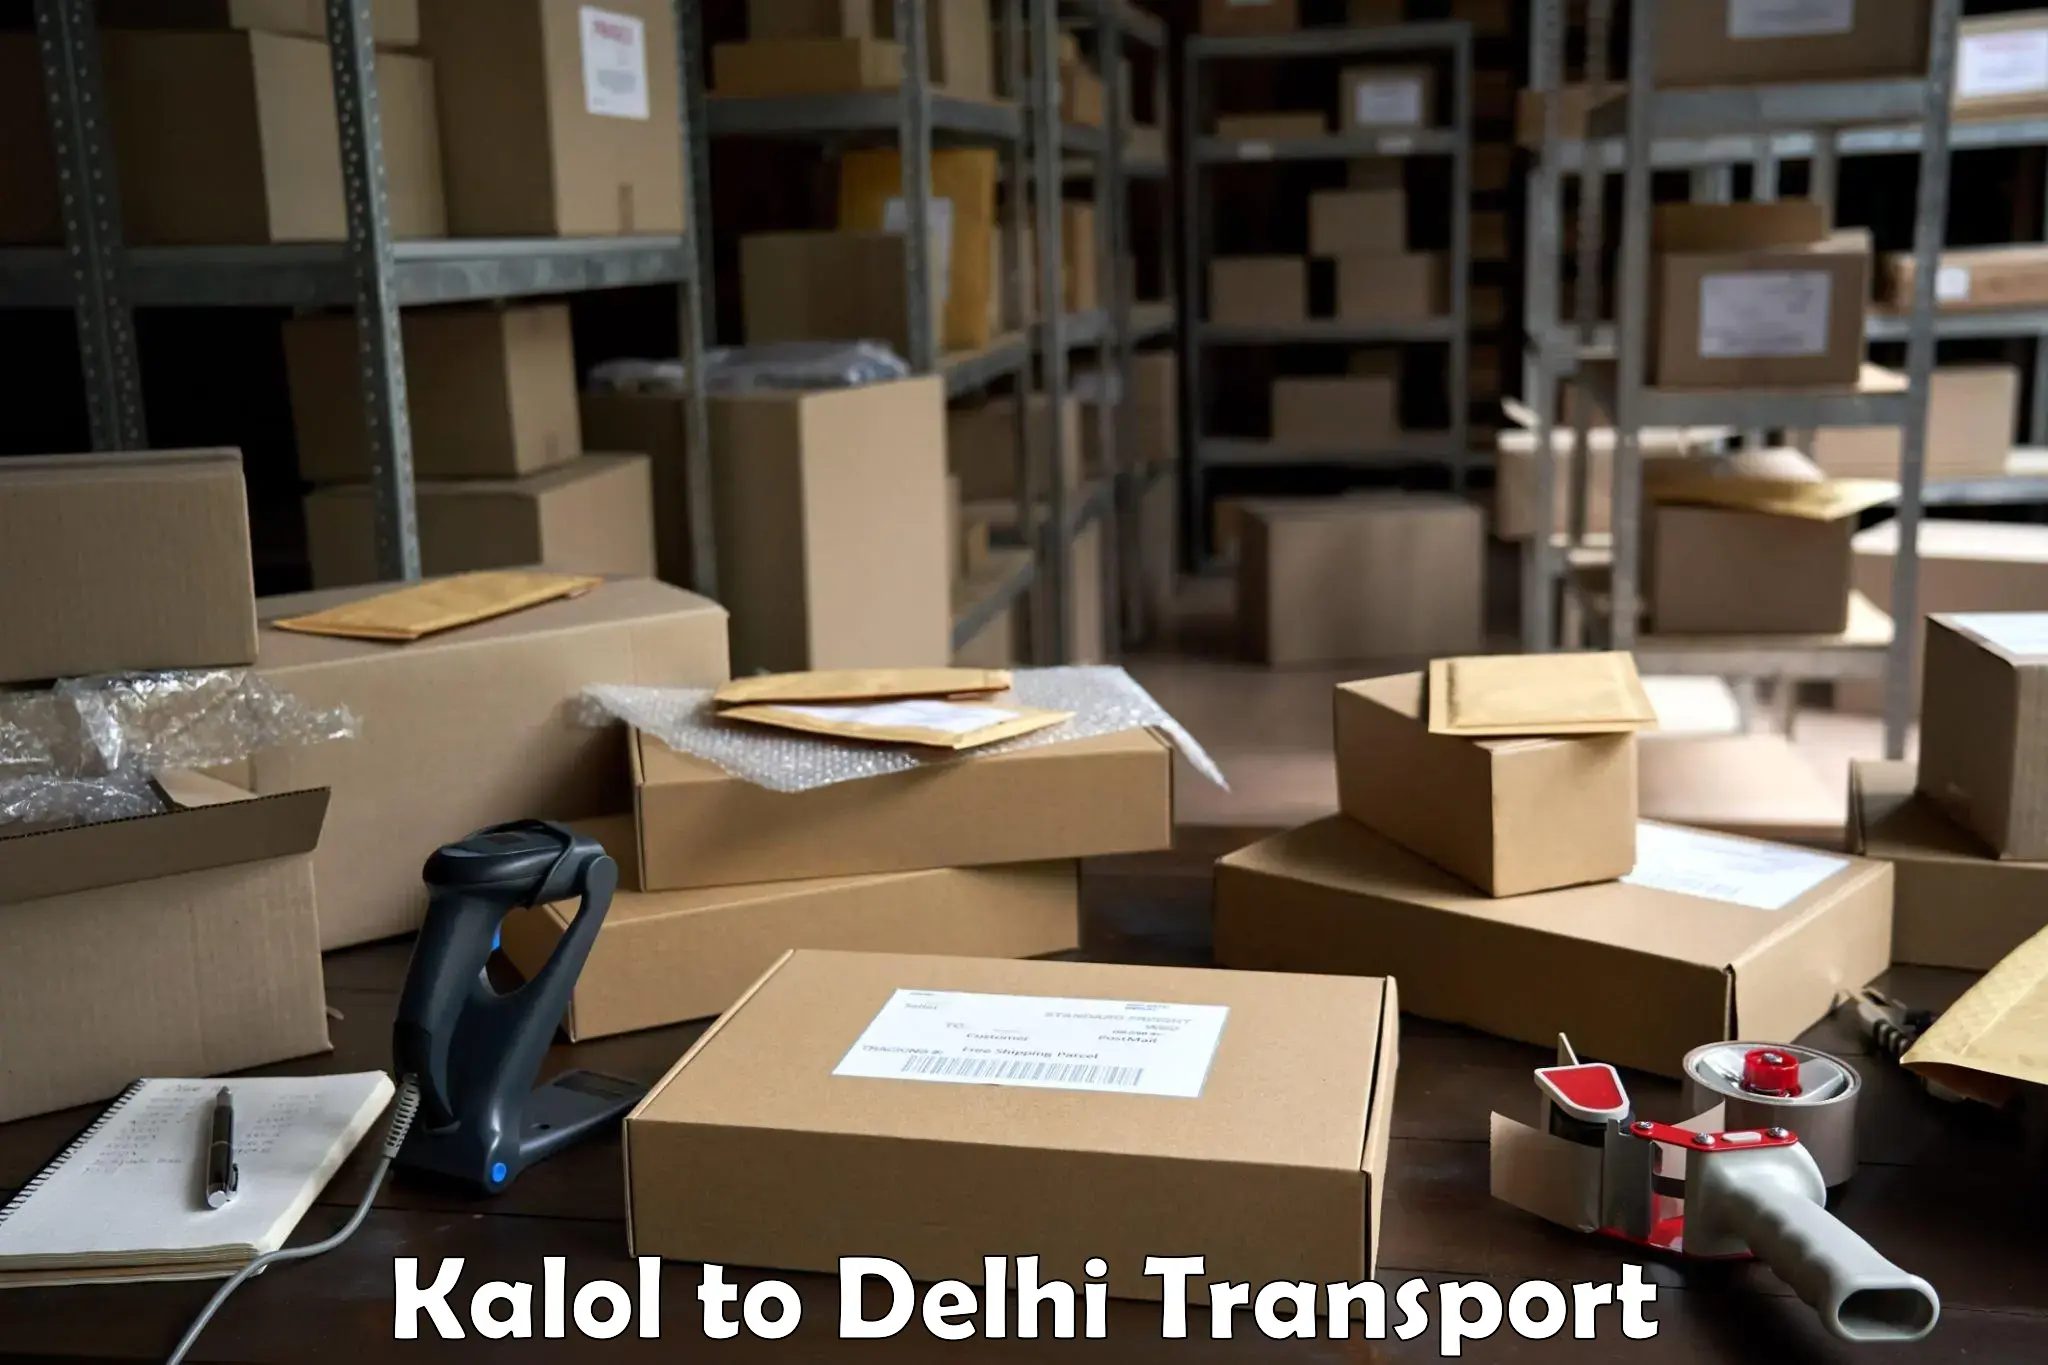 Domestic transport services Kalol to IIT Delhi